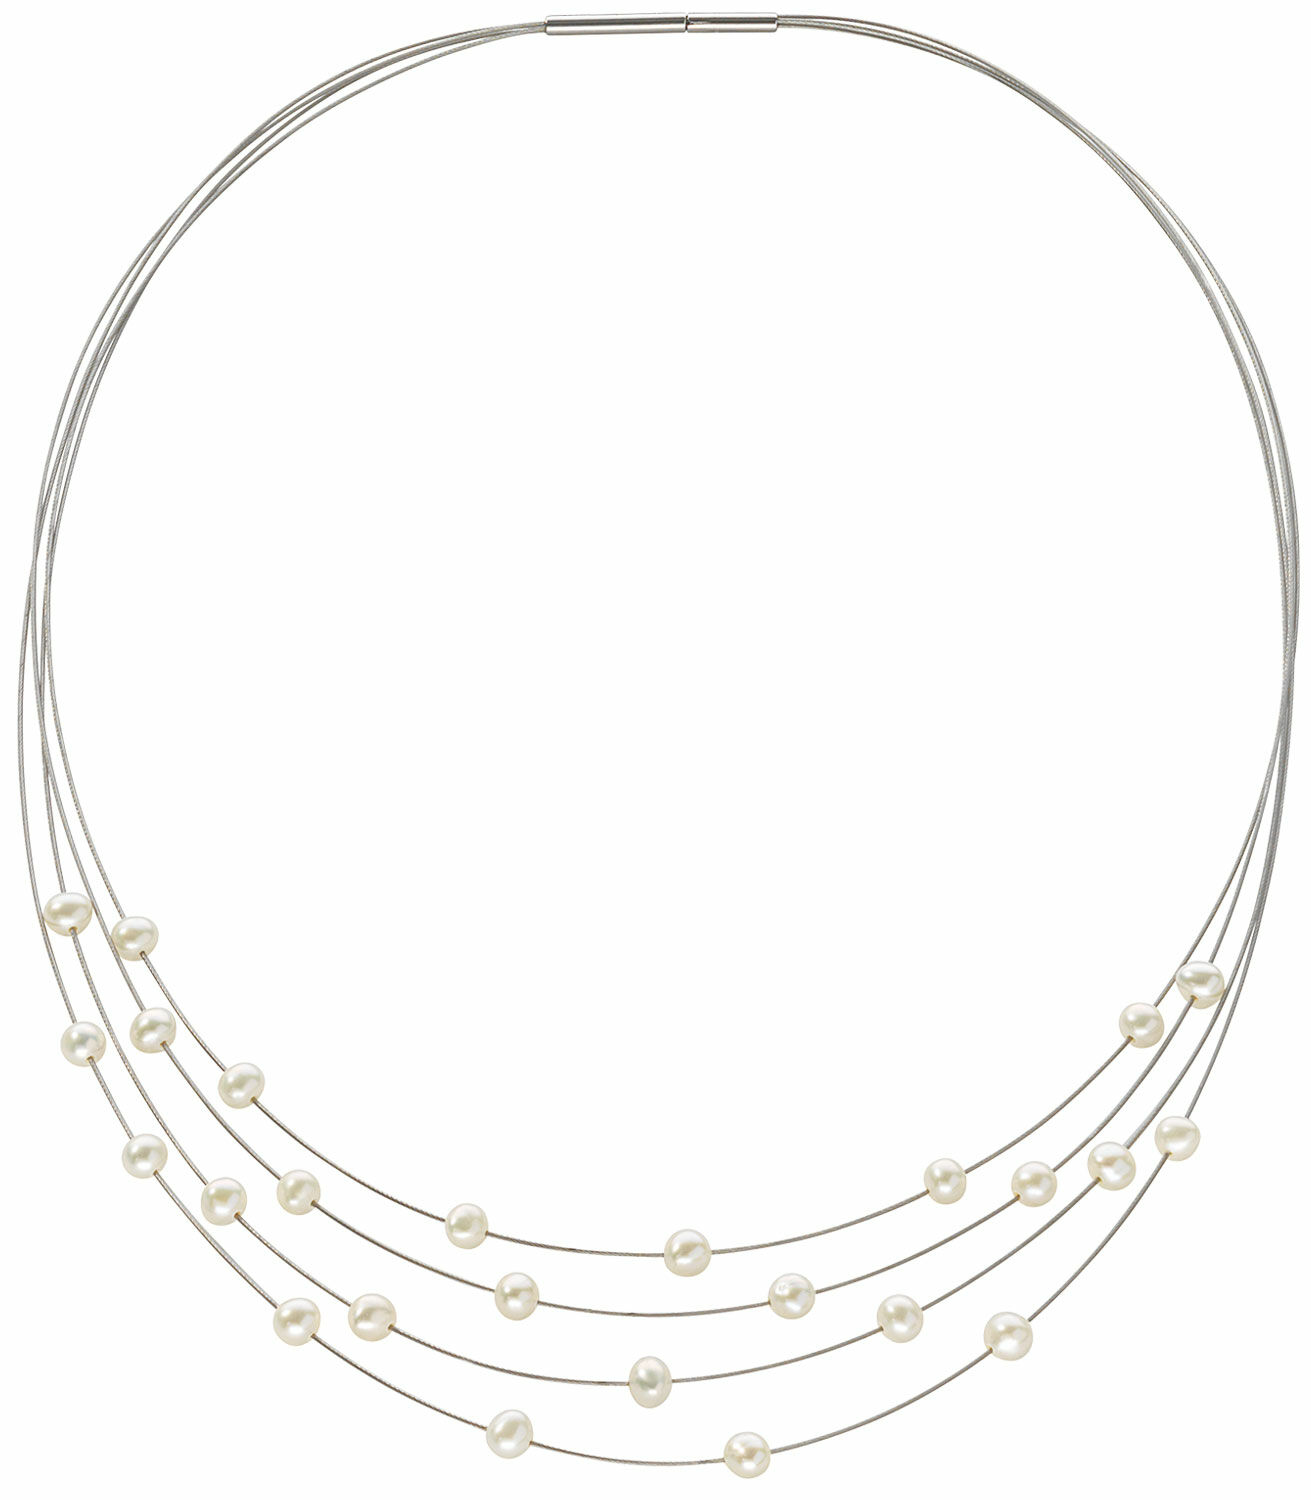 Pearl necklace "Linnea"